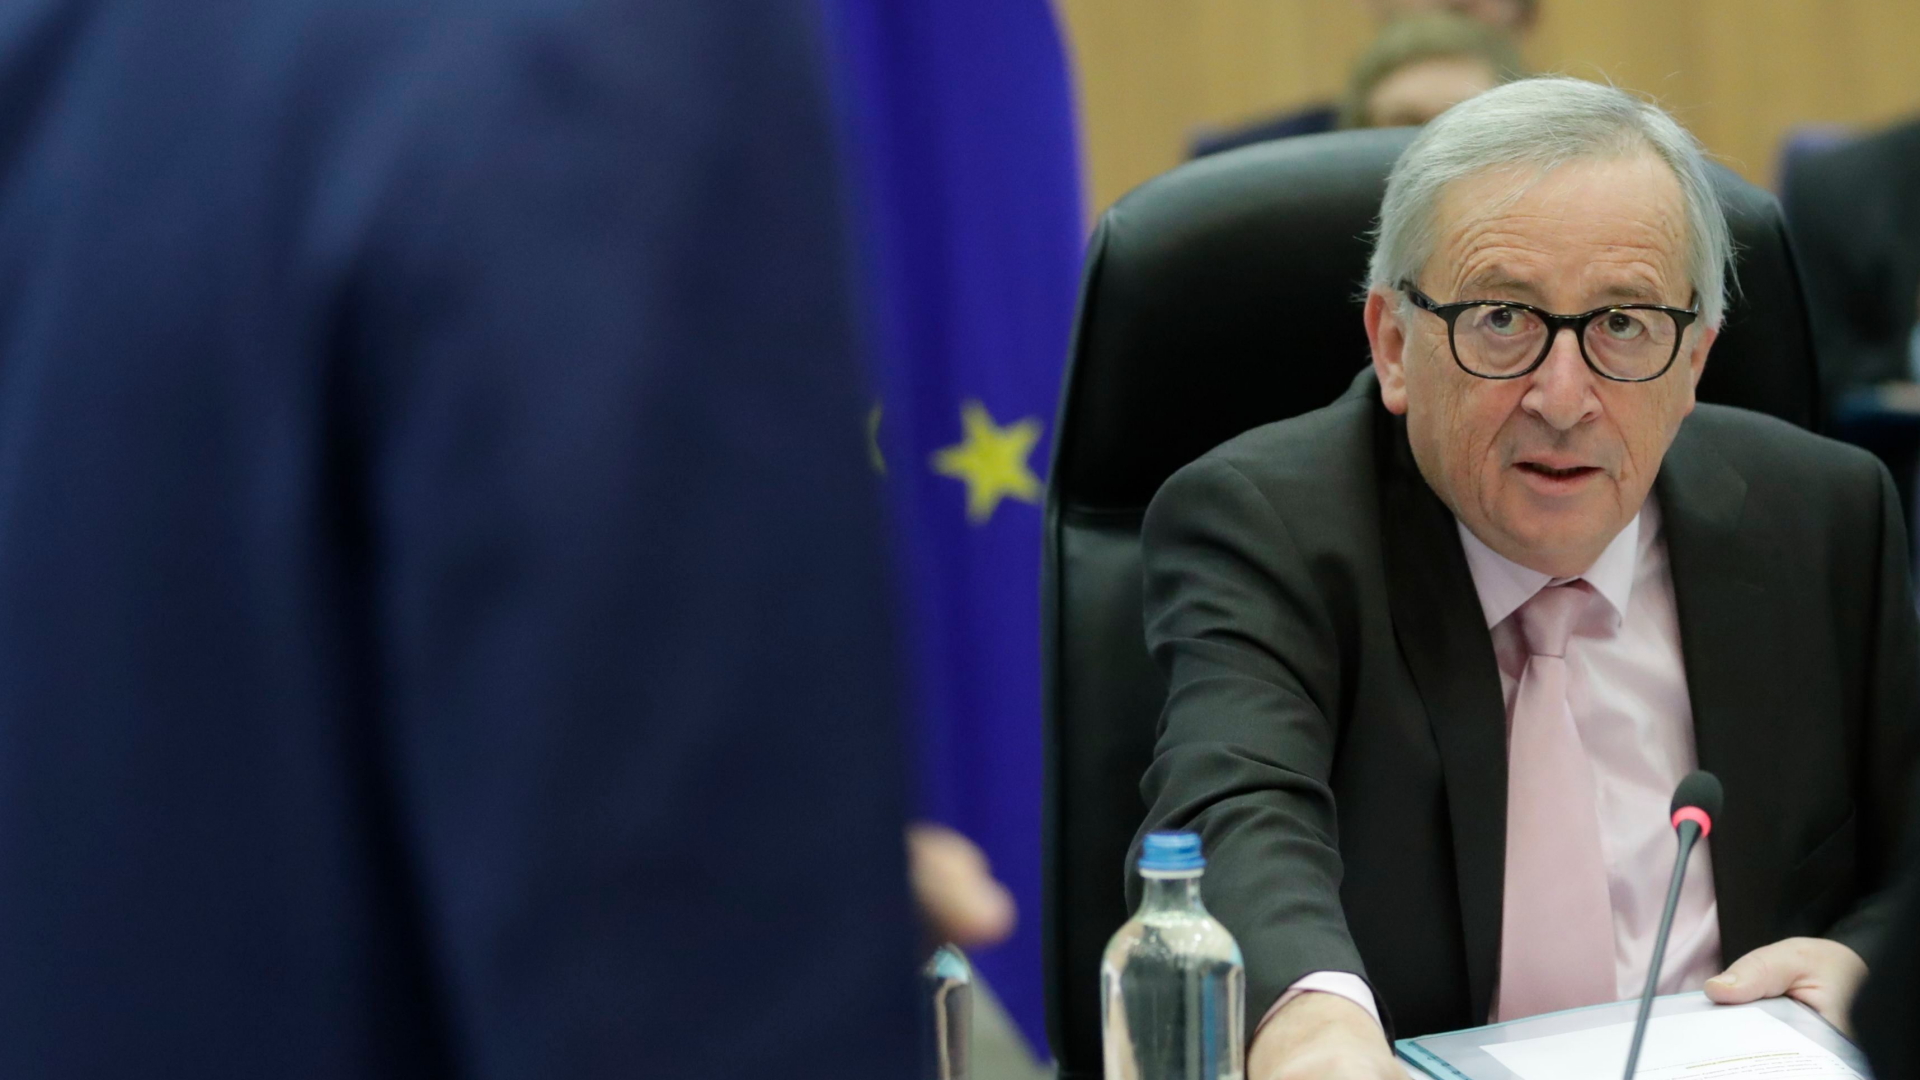 Der scheidende EU-Kommissionschef Juncker bei der wöchentlichen Sitzung in Brüssel | OLIVIER HOSLET/EPA-EFE/REX